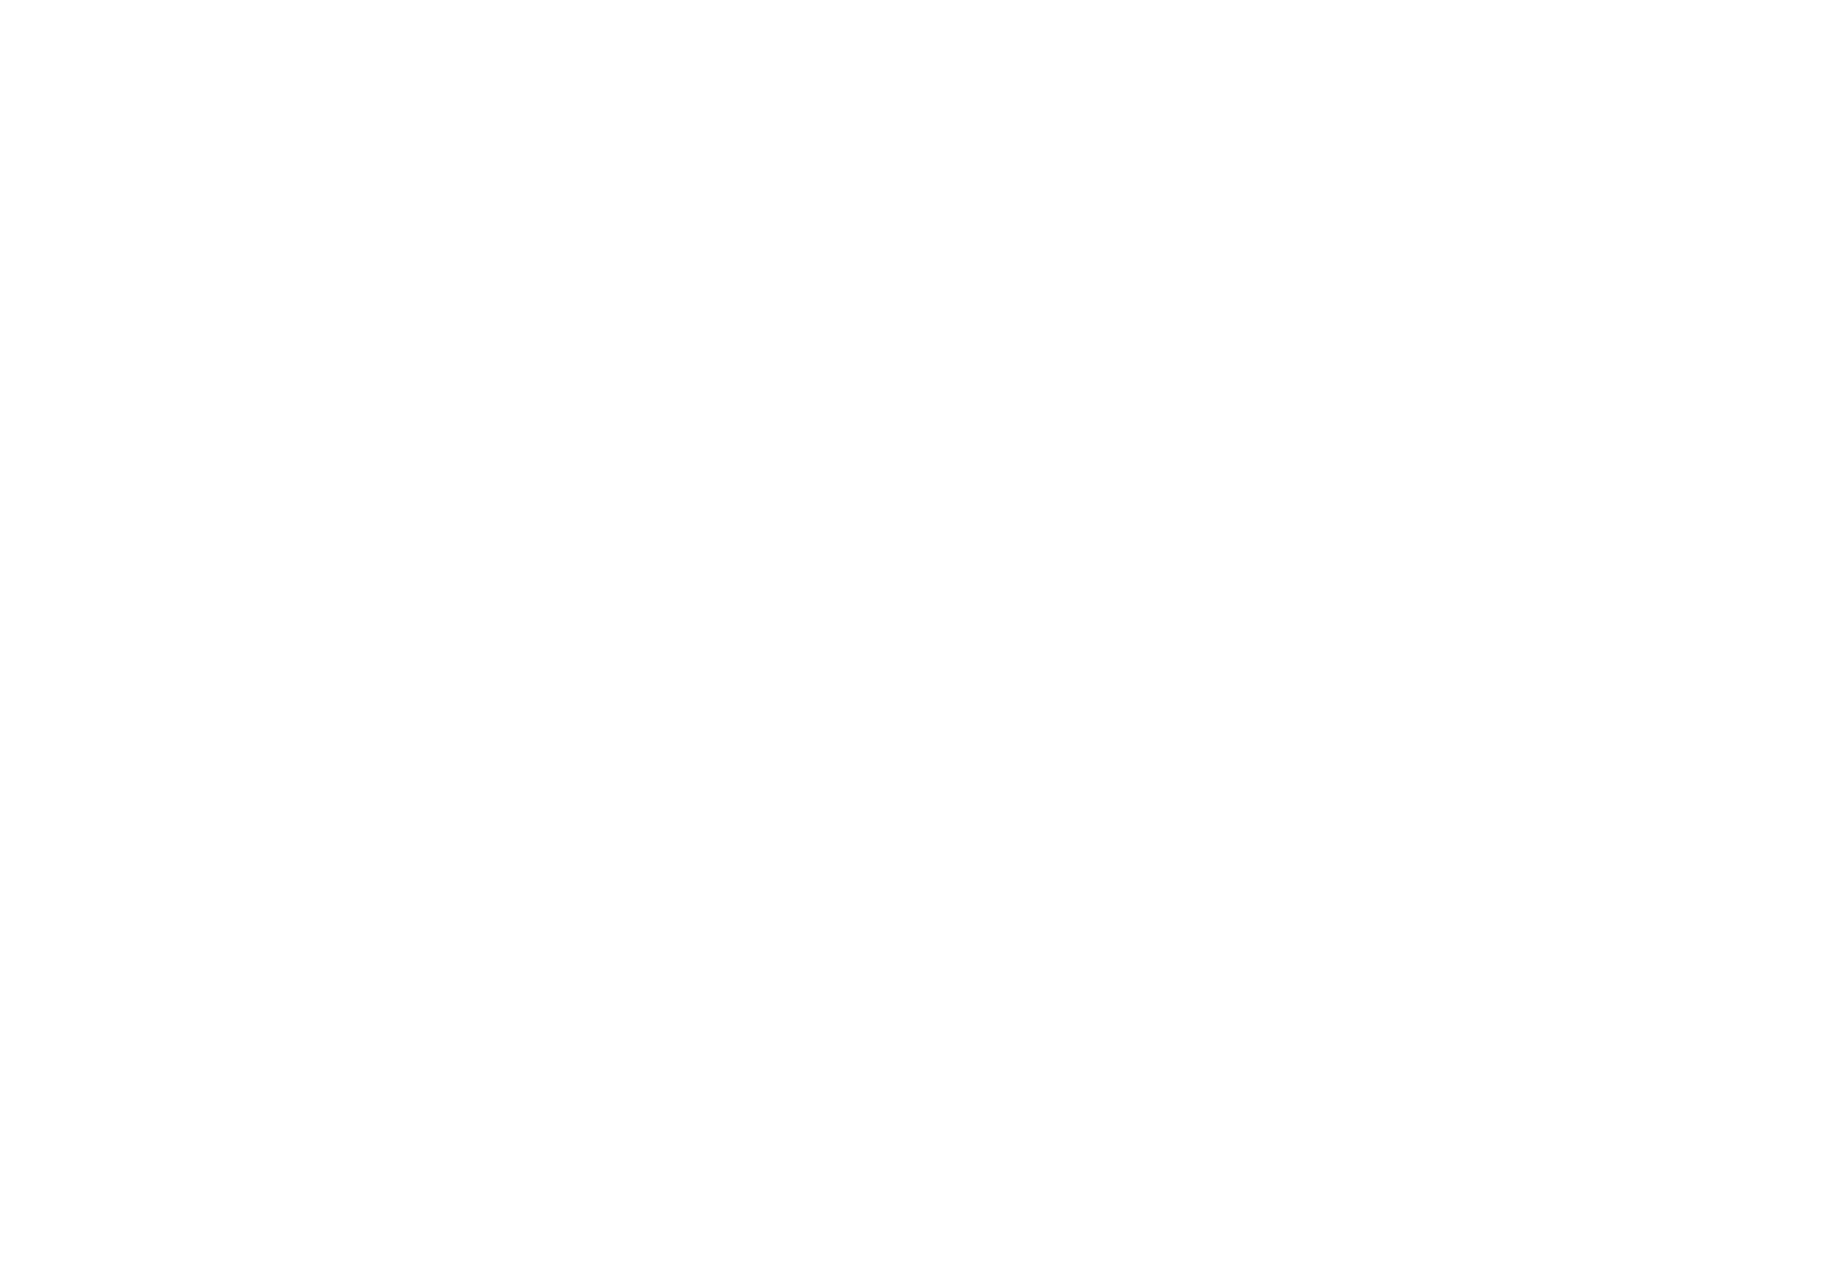 Vine Bar